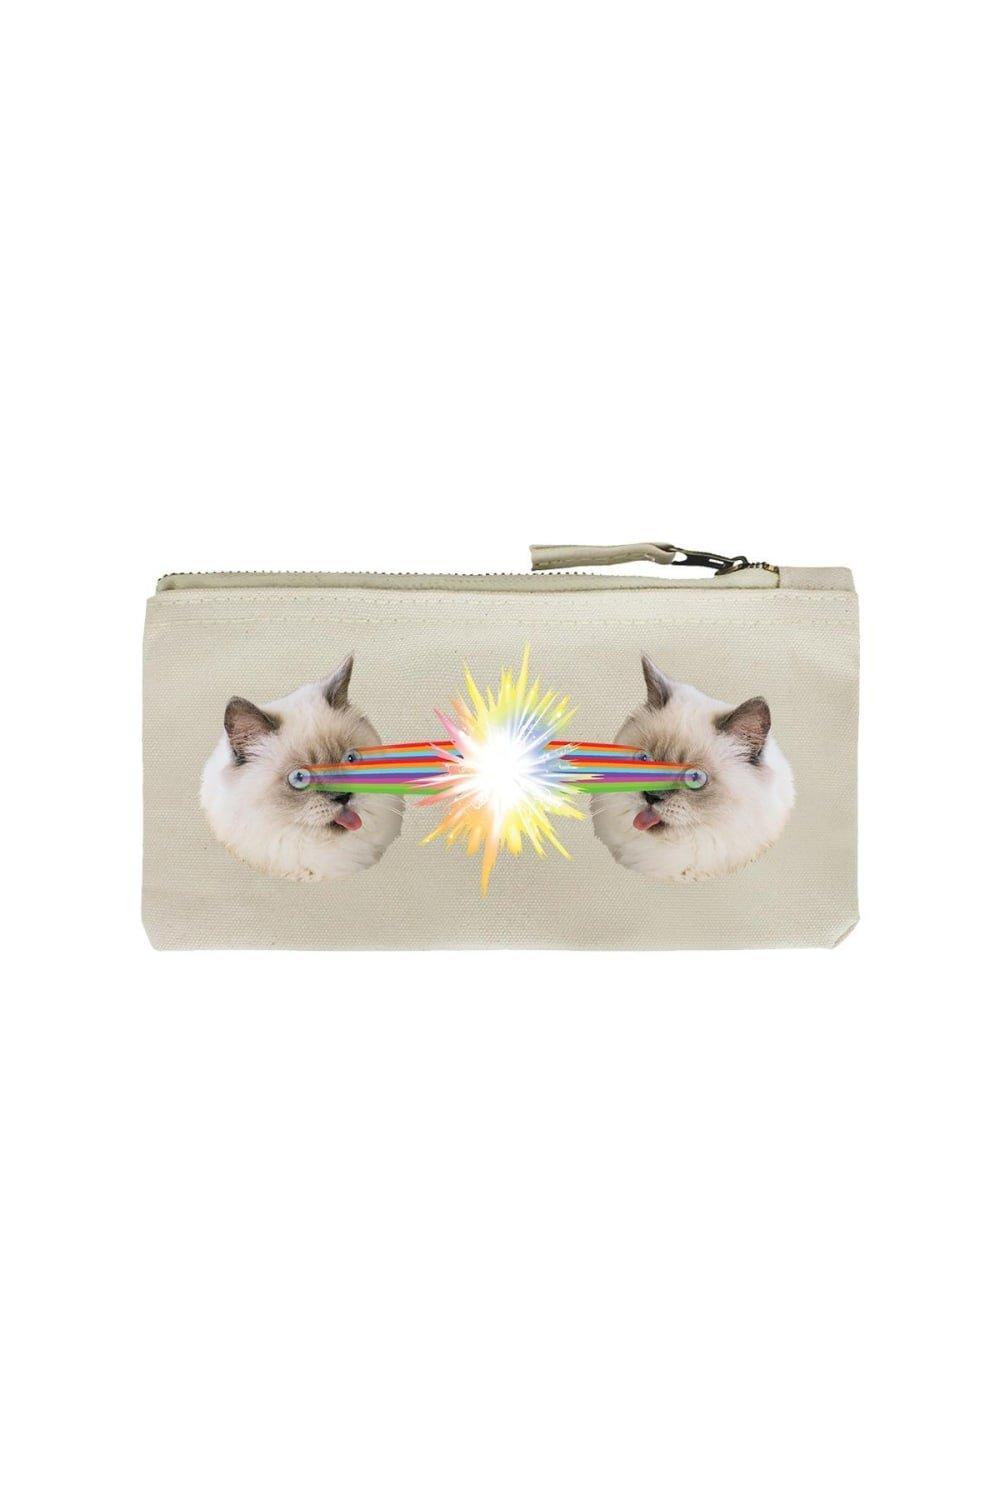 Пенал Crazy Laser Kitten Grindstore, белый 1 шт застежка молния гемостатическая застежка молния быстрая застежка молния уличная портативная